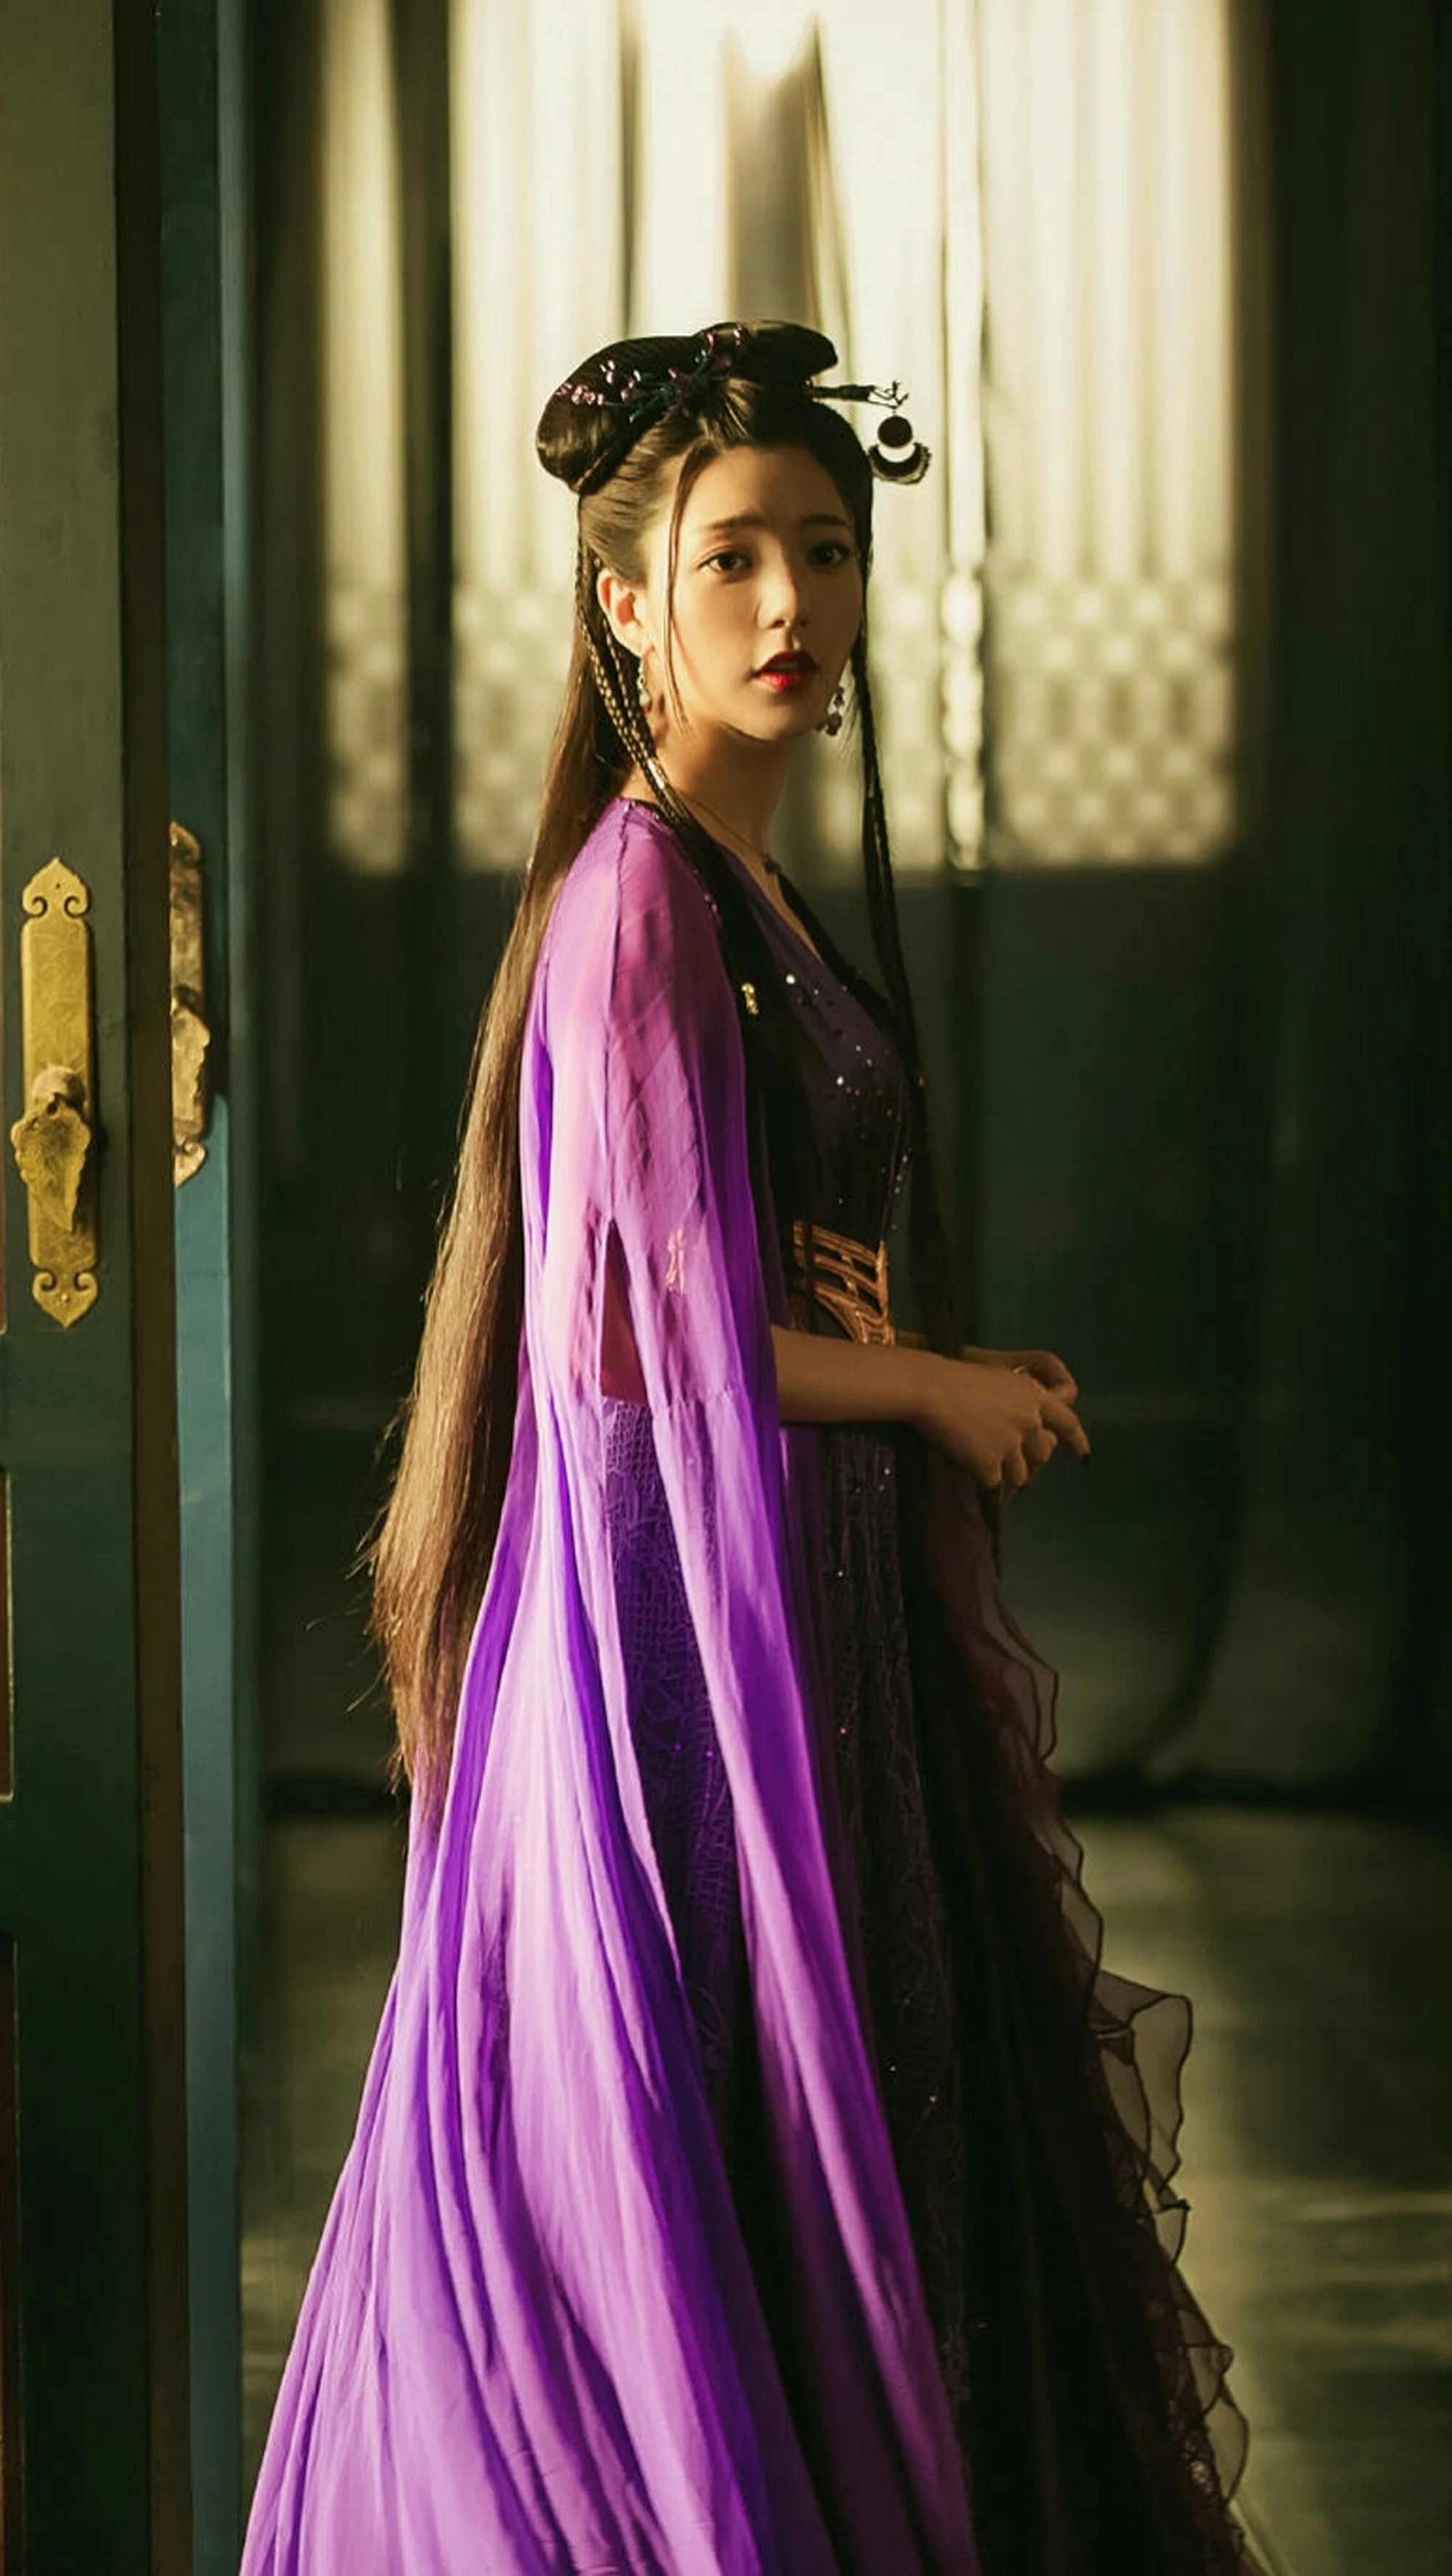 《媚者无疆》最美不是李一桐,而是一袭紫衣神秘妩媚的